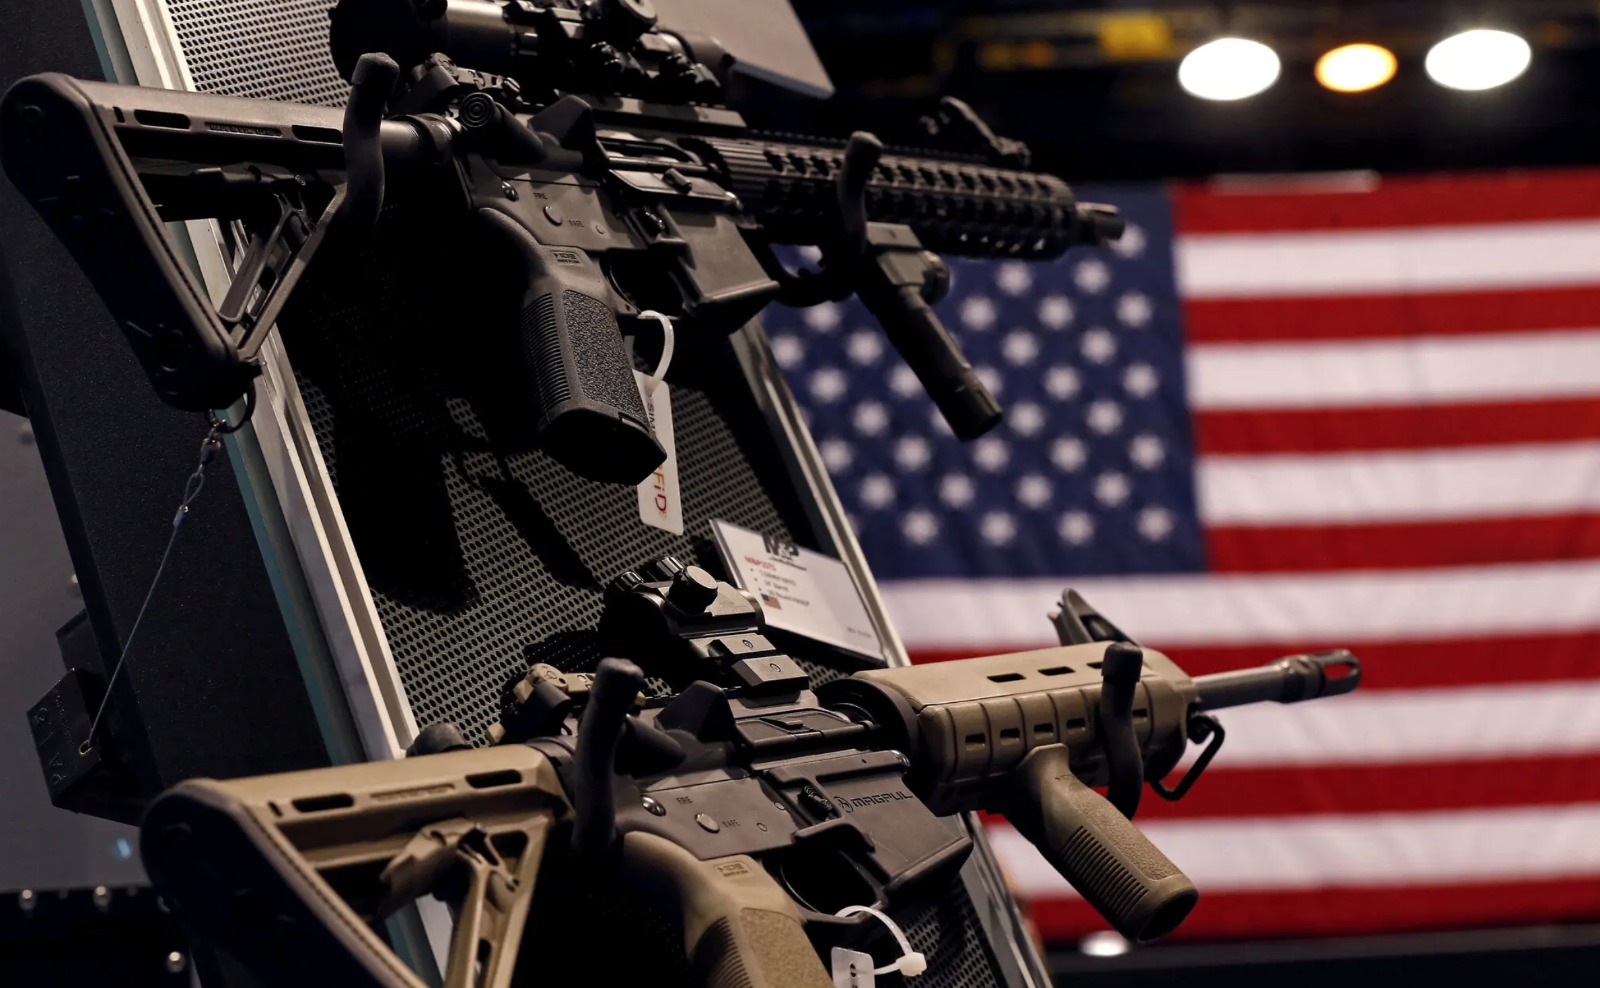 Exposición organizada por fabricantes de armas estadounidenses